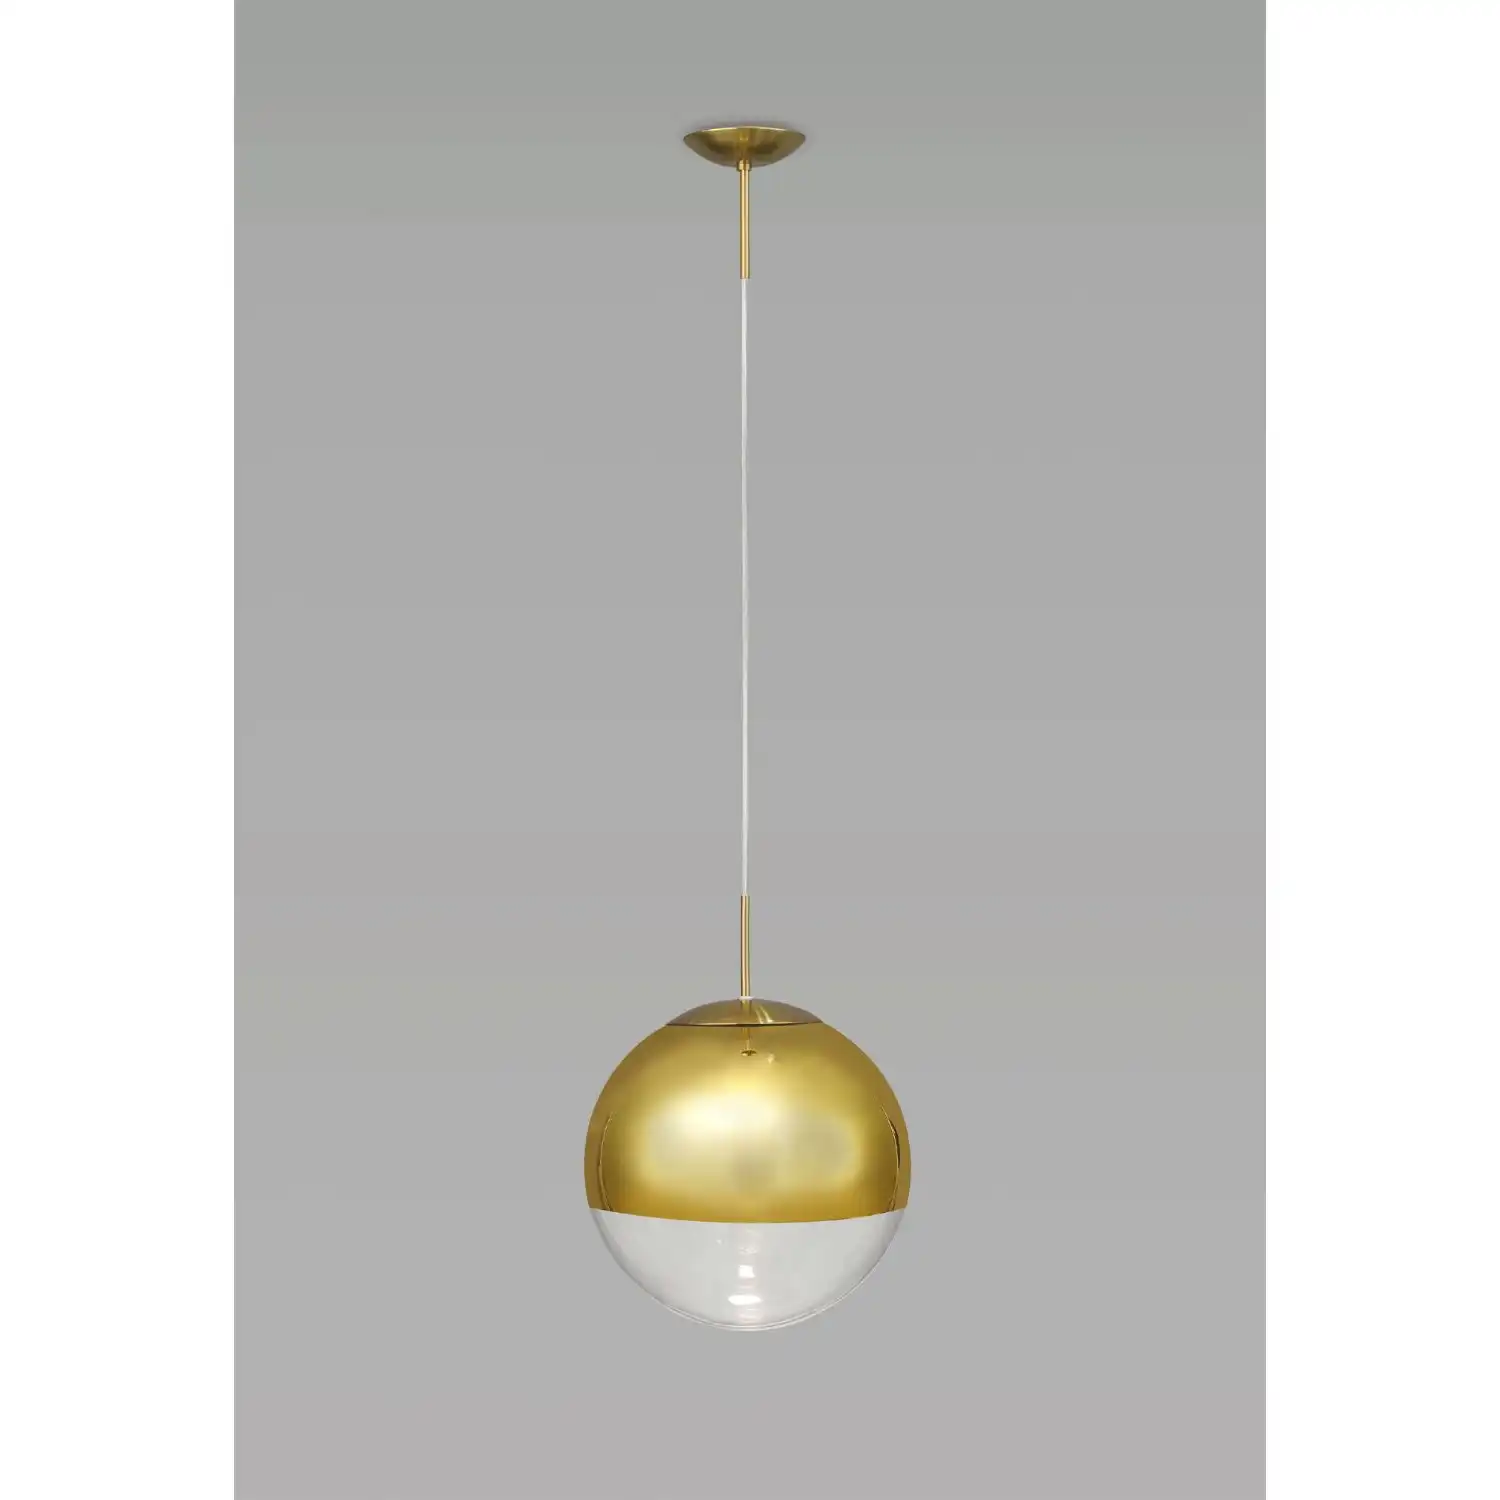 Miranda Small Ball Pendant 1 Light E27 Antique Gold Suspension with Gold Mirrored Clear Glass Globe